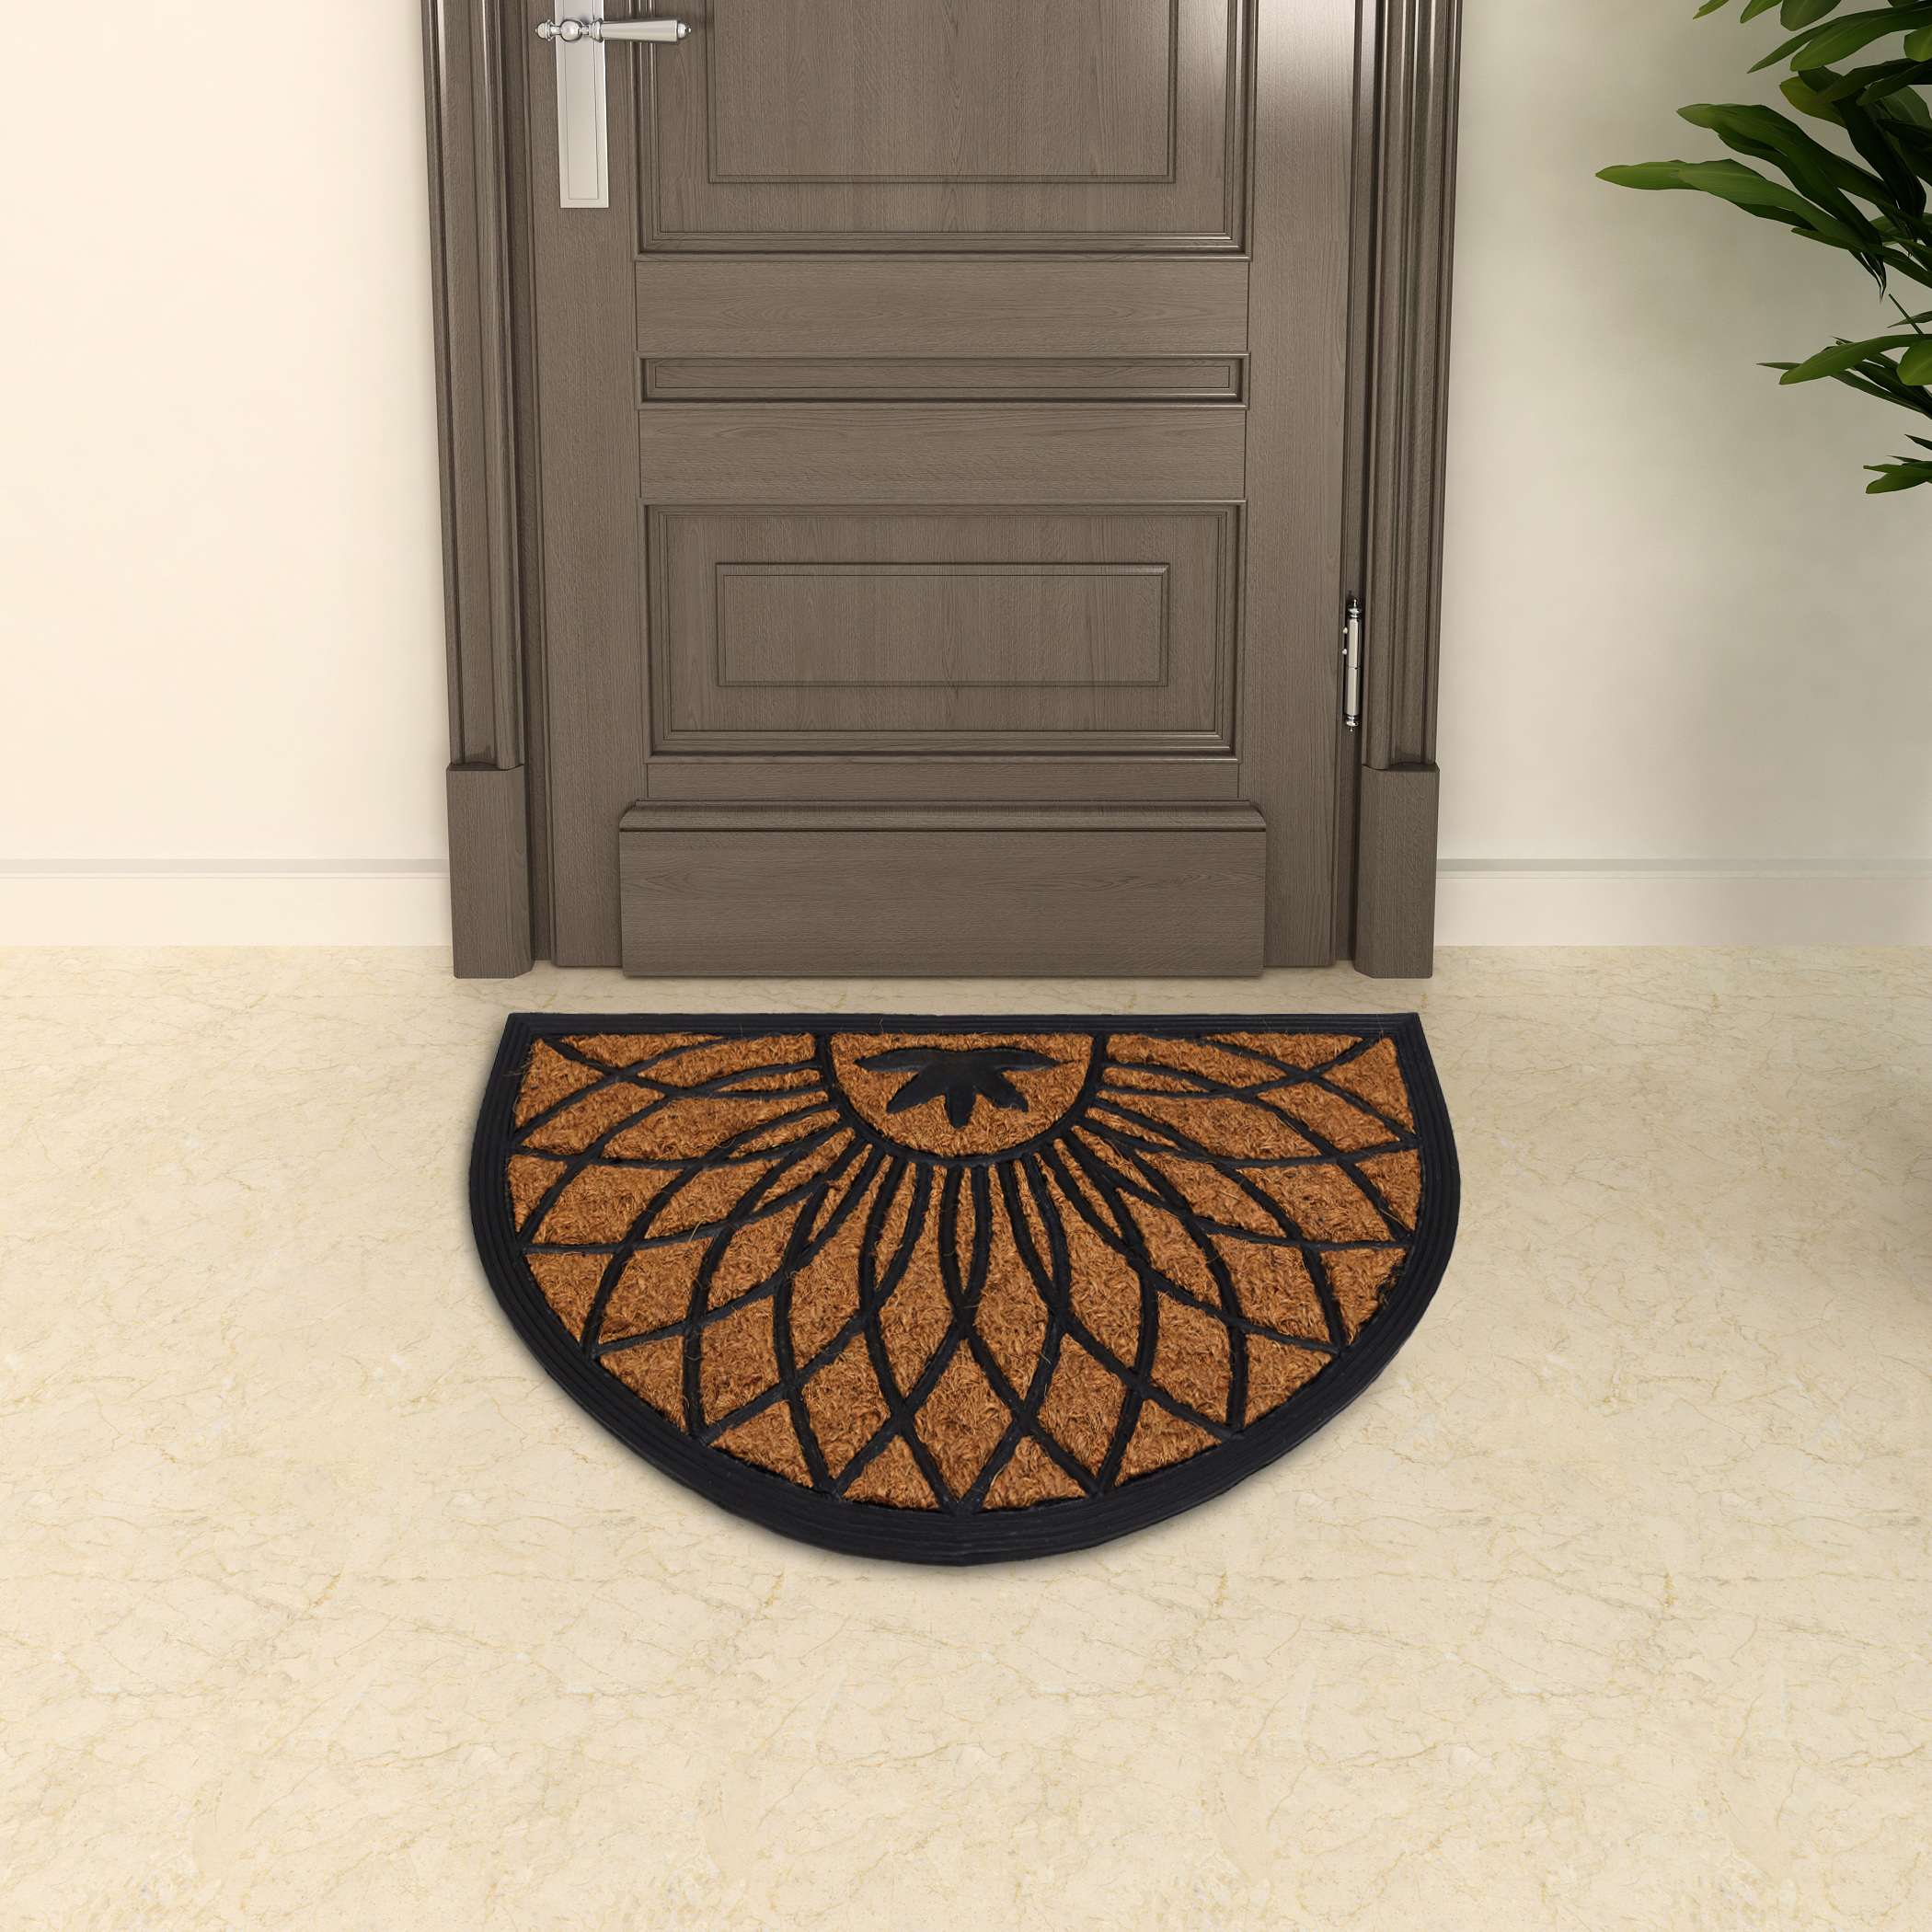 Radiance Rubber Coir Doormat - 60x40cm